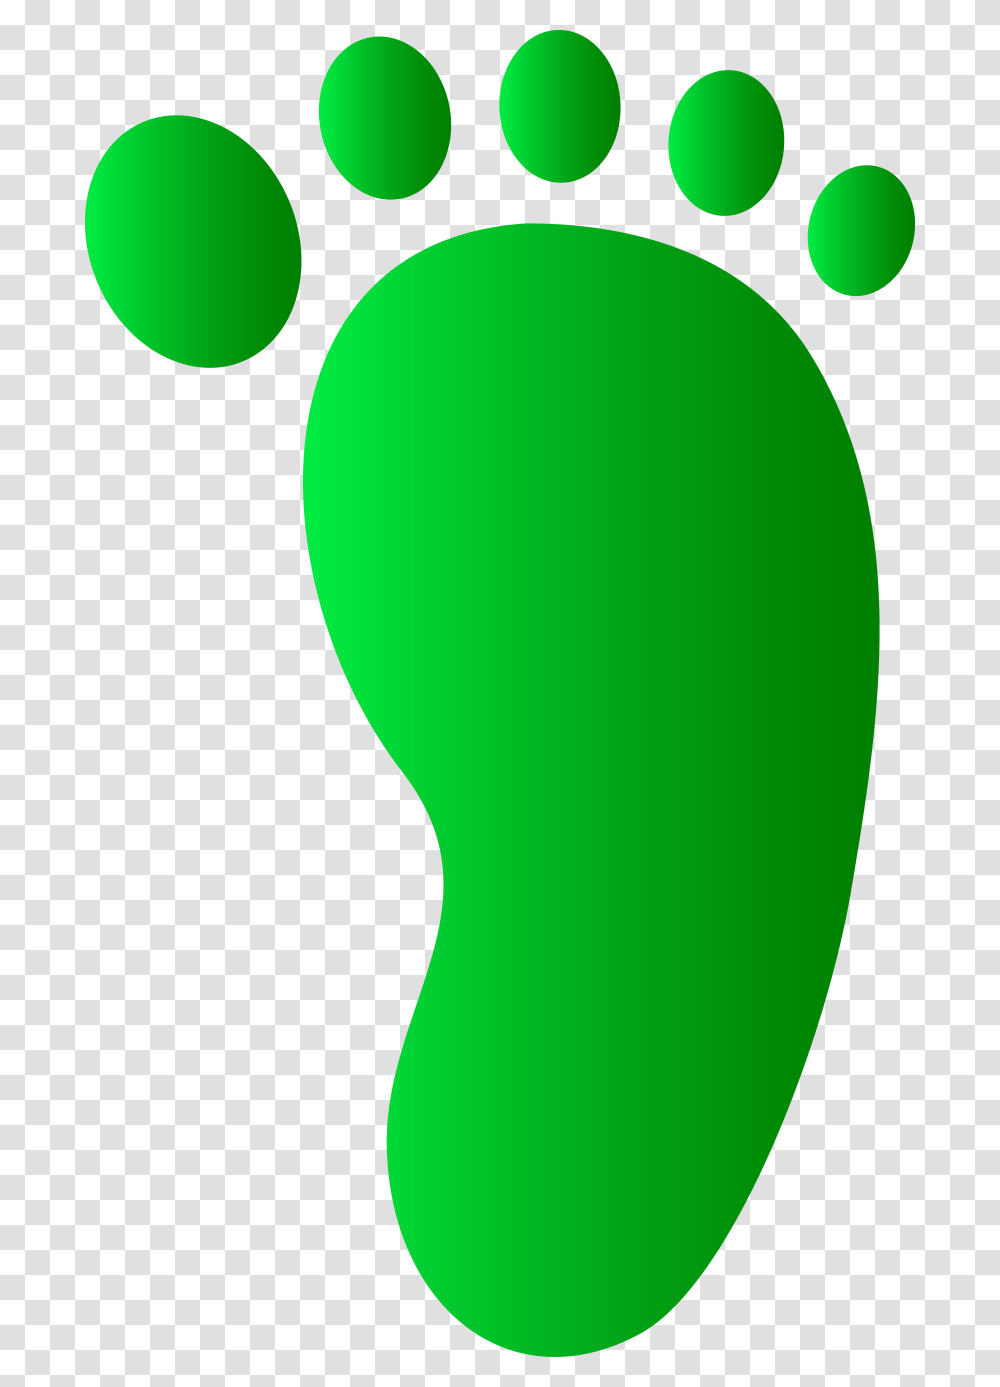 Walking Feet Clip Art, Balloon, Footprint, Apparel Transparent Png